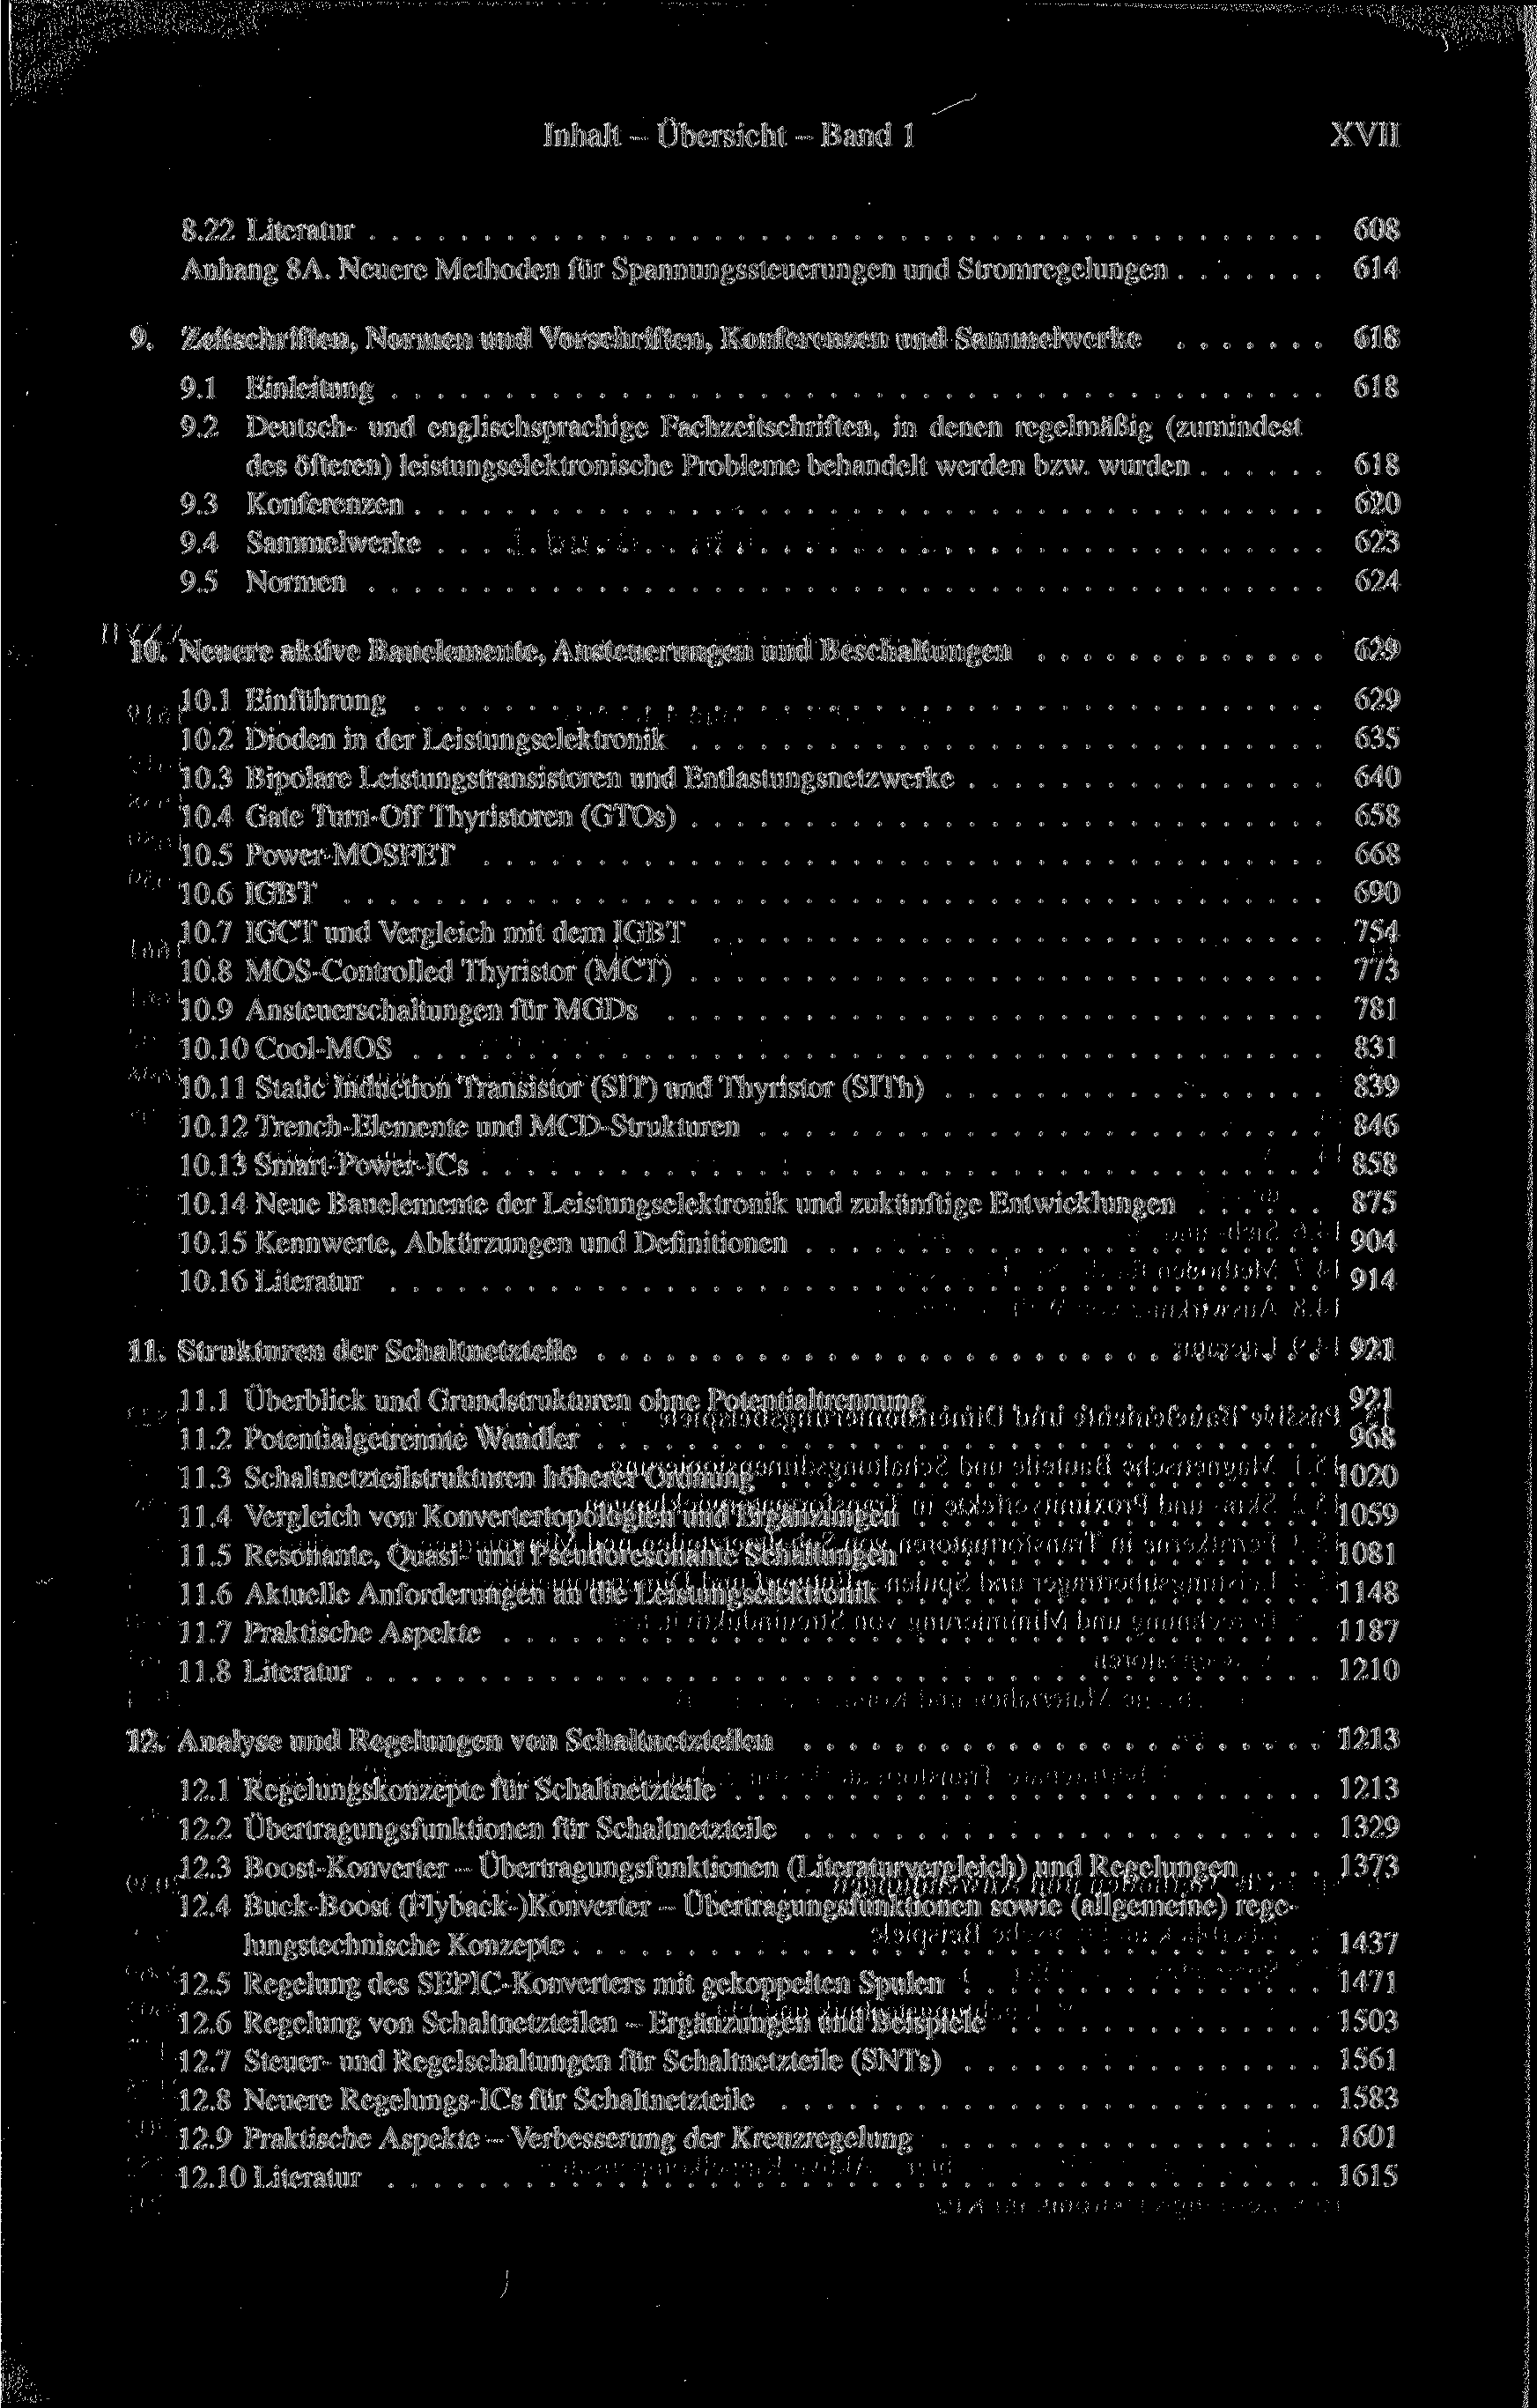 Inhalt - Übersicht - Band 1 XVII 8.22 Literatur 608 Anhang 8A. Neuere Methoden für Spannungssteuerungen und Stromregelungen 614 9.